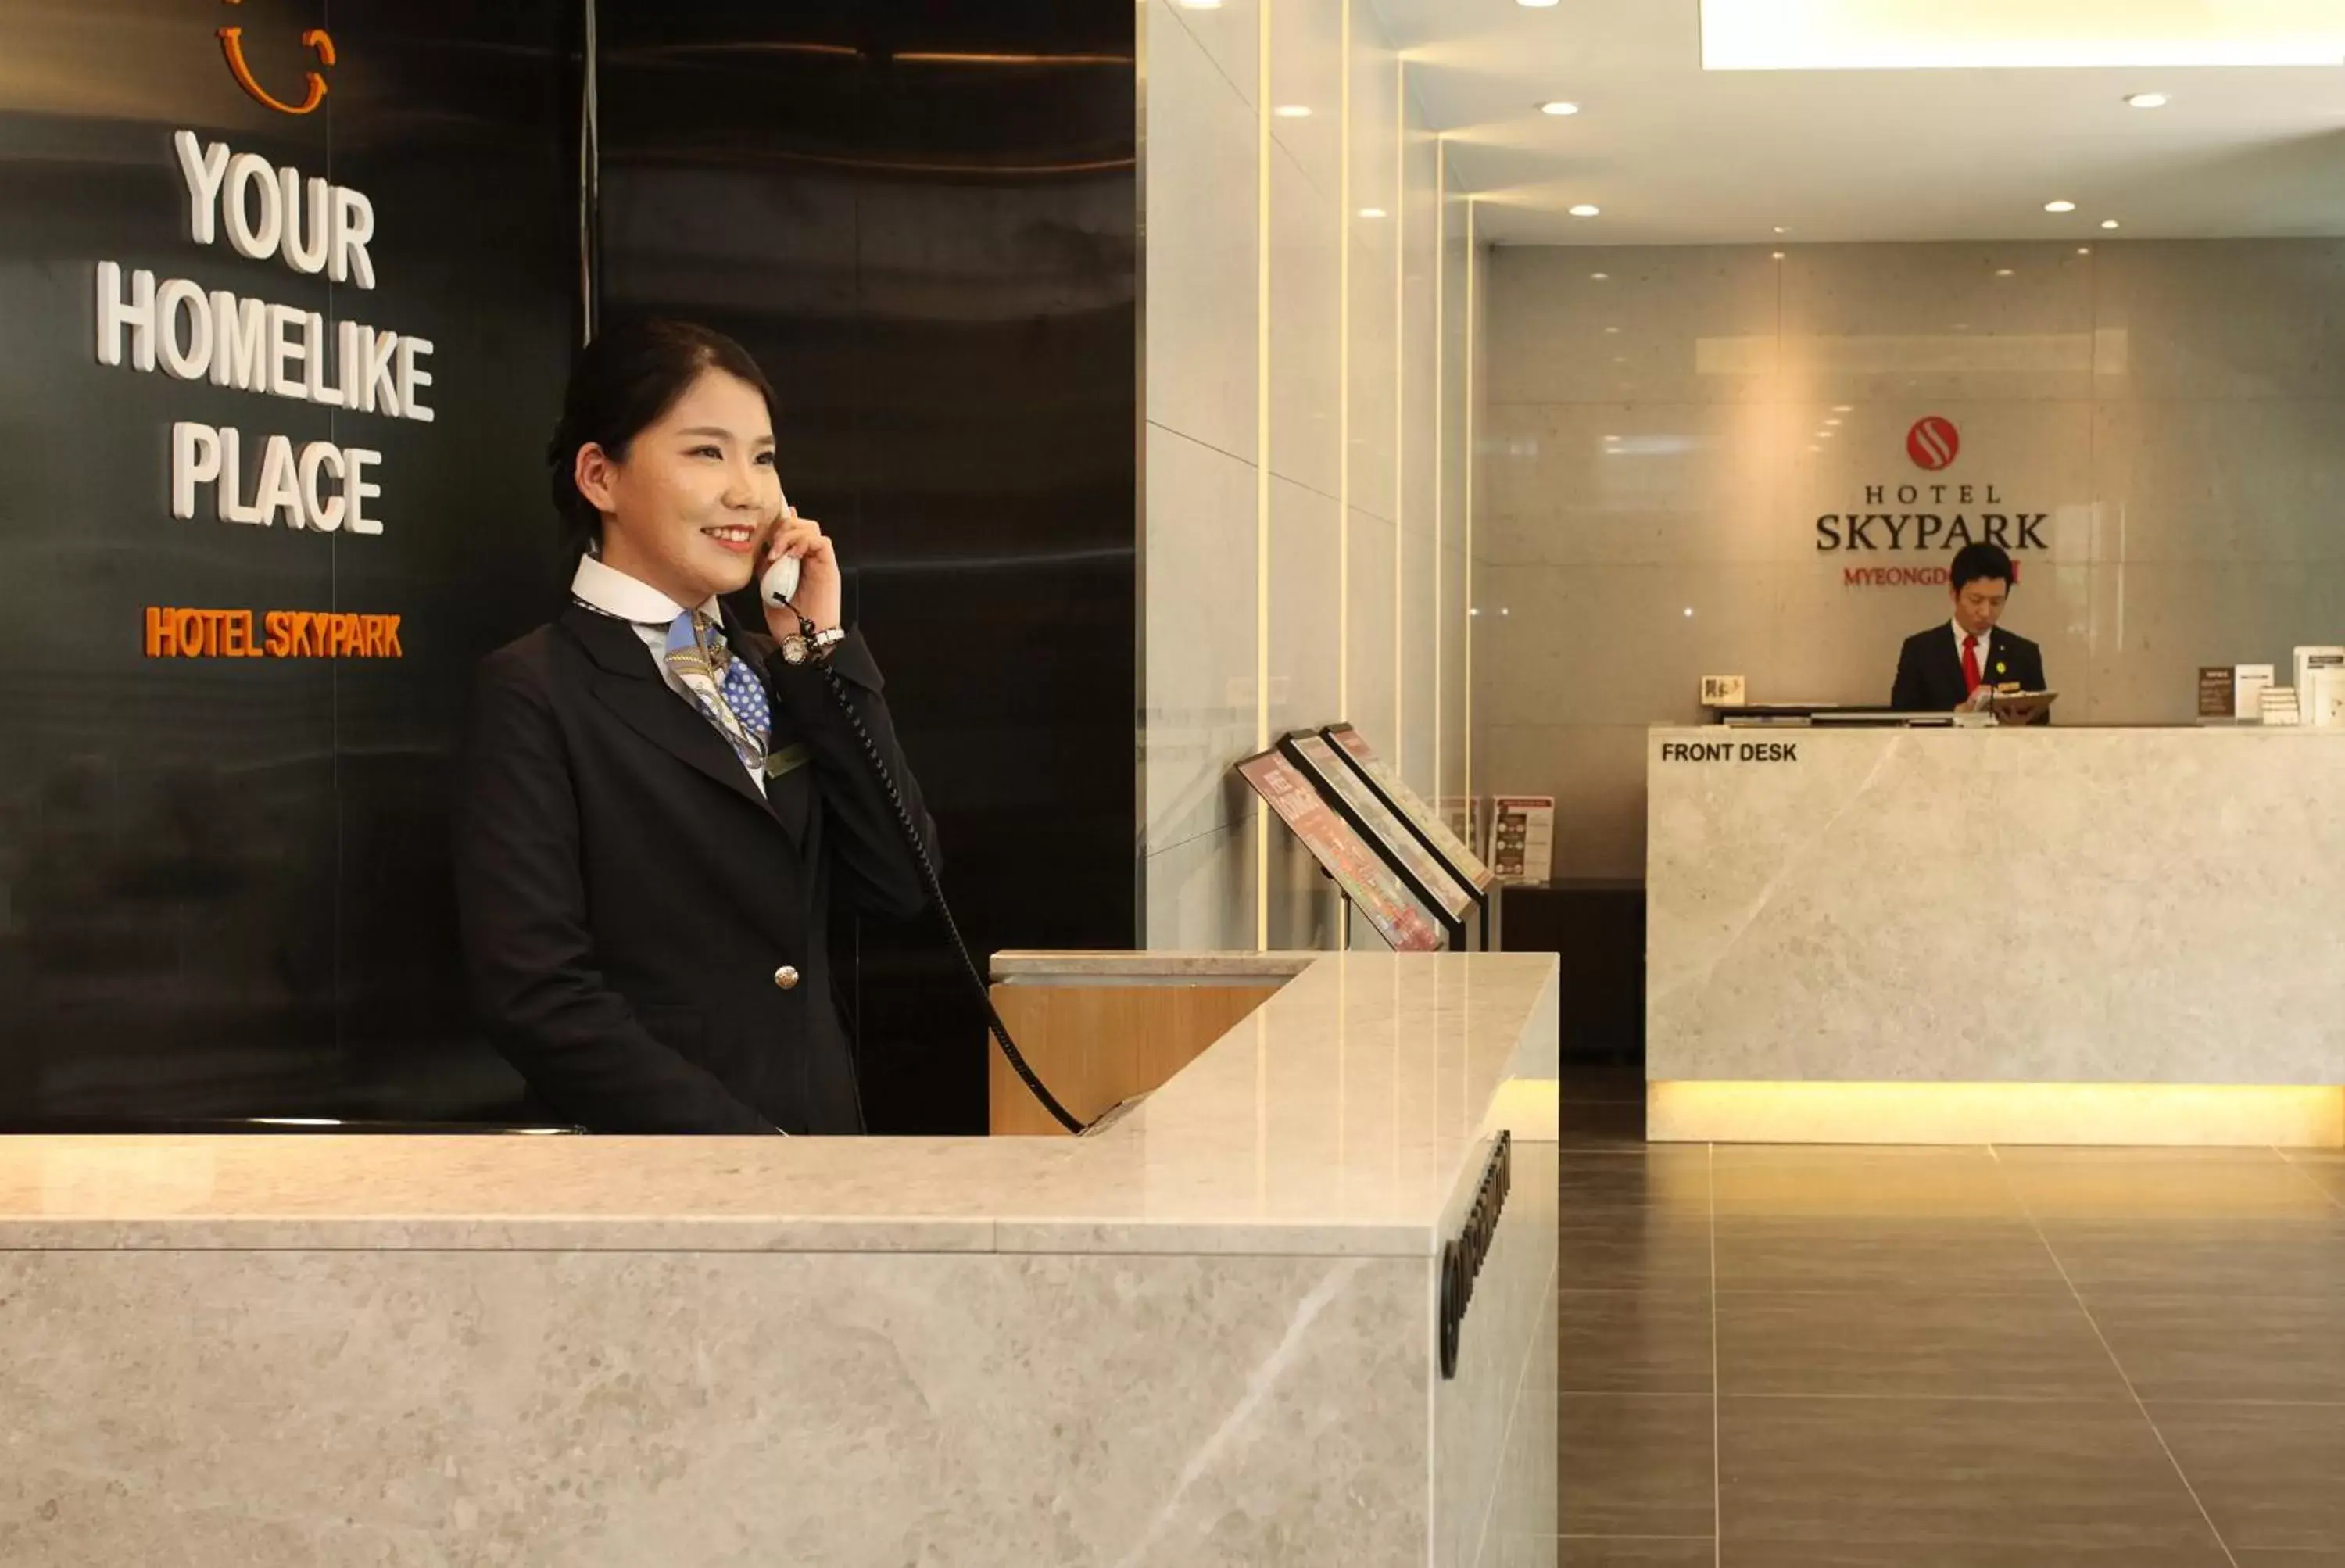 Lobby or reception, Lobby/Reception in Hotel Skypark Myeongdong 2